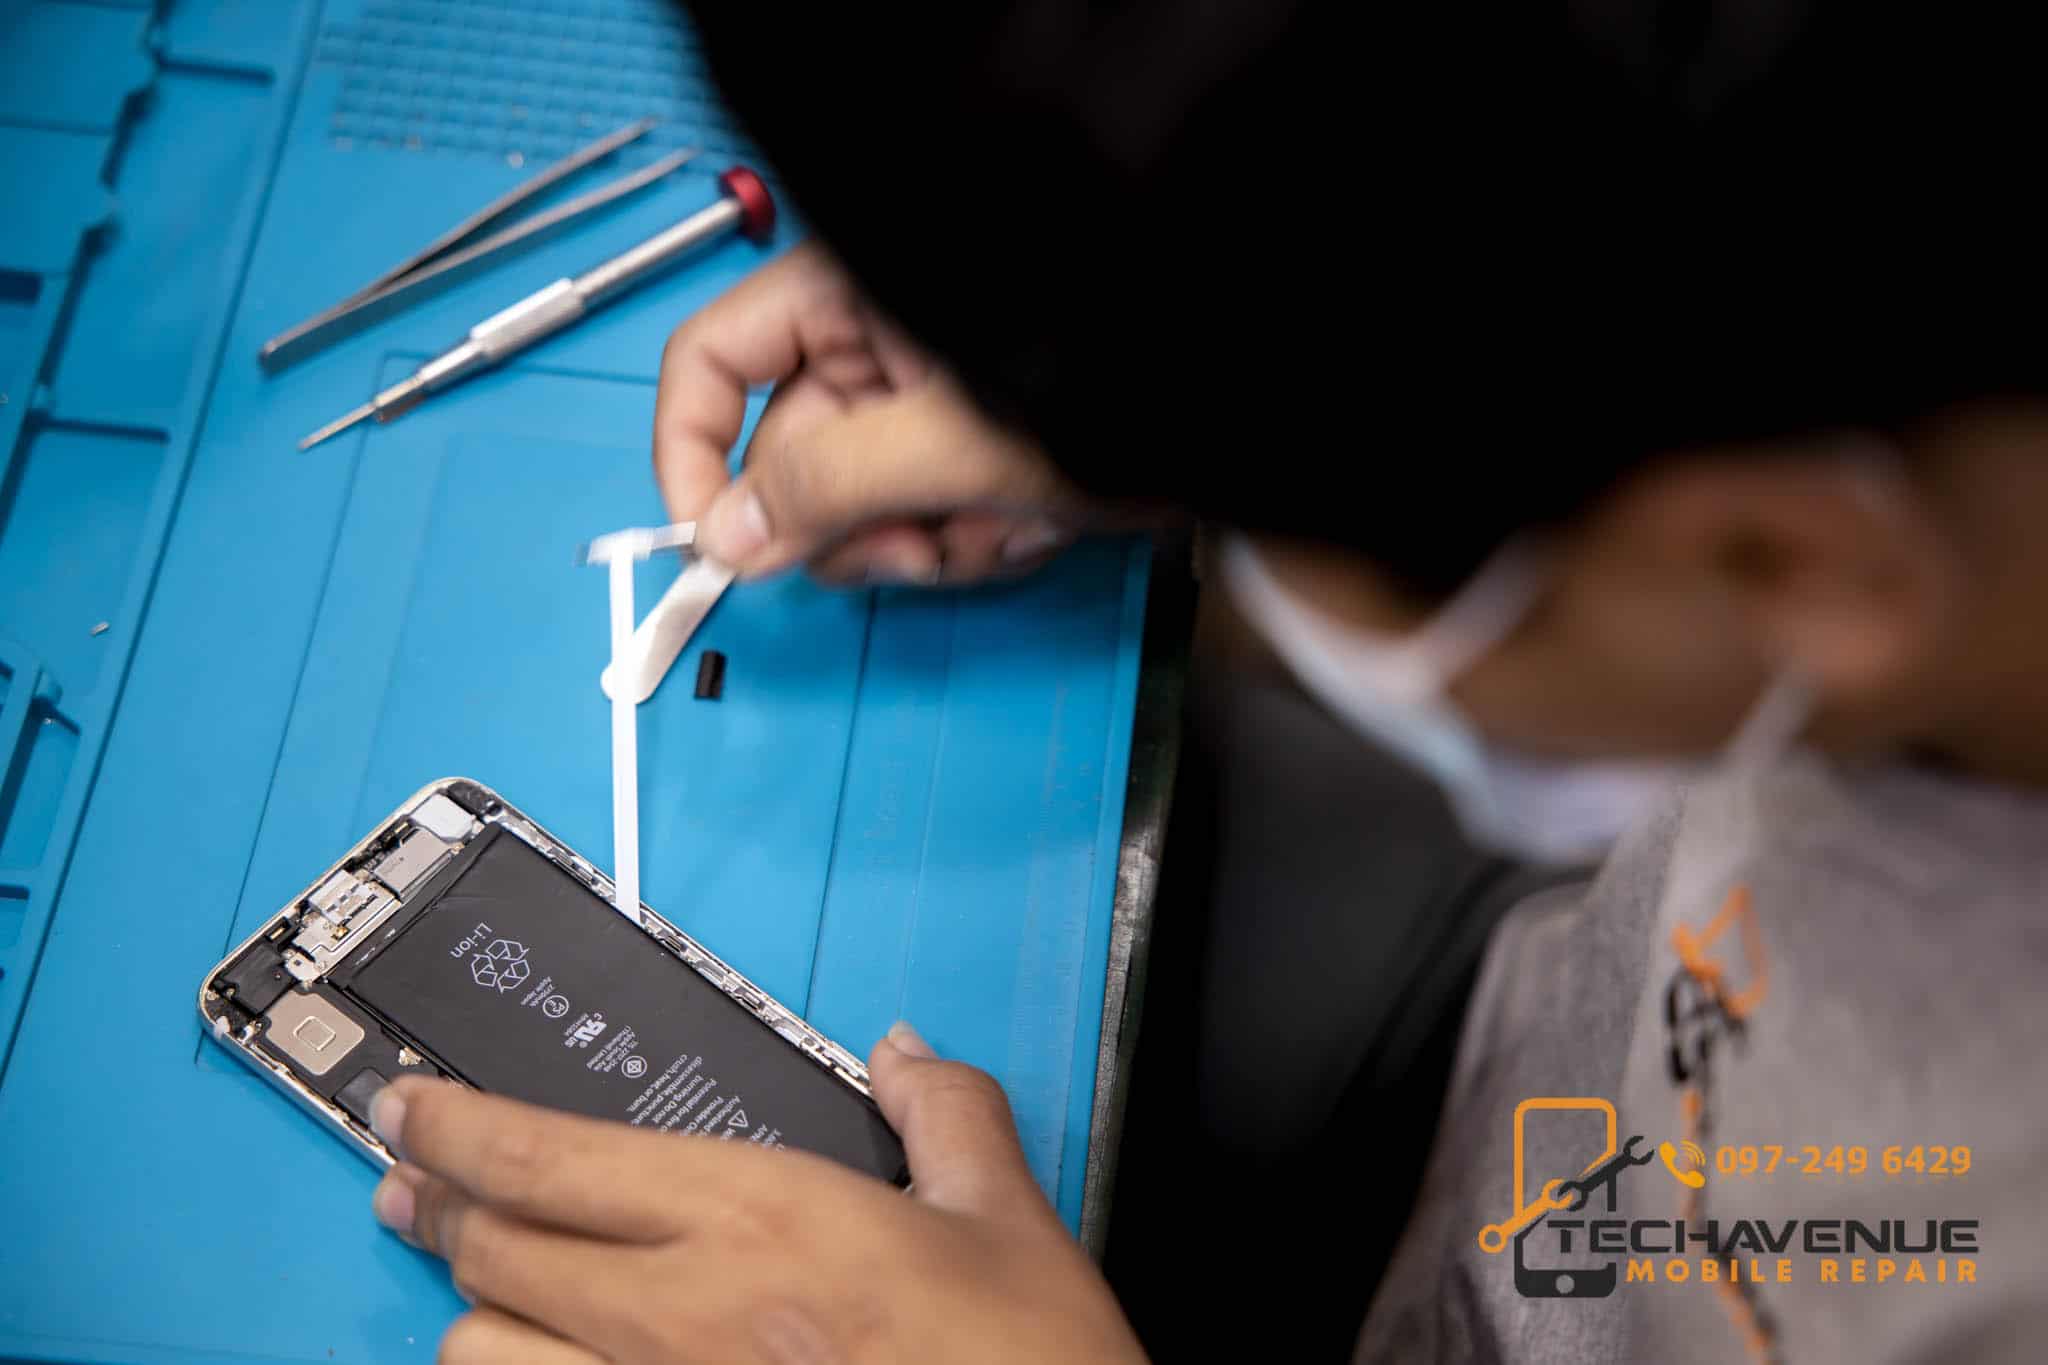 ซ่อมมือถือ แถวตลาดหลักทรัพย์ แห่งประเทศไทย ร้านไหนดี ราคาถูก 🥇 ศูนย์ซ่อม โทรศัพท์มือถือ มือถือทุกรุ่น ทุกยี่ห้อ iPhone | Apple | Samsung | Huawei